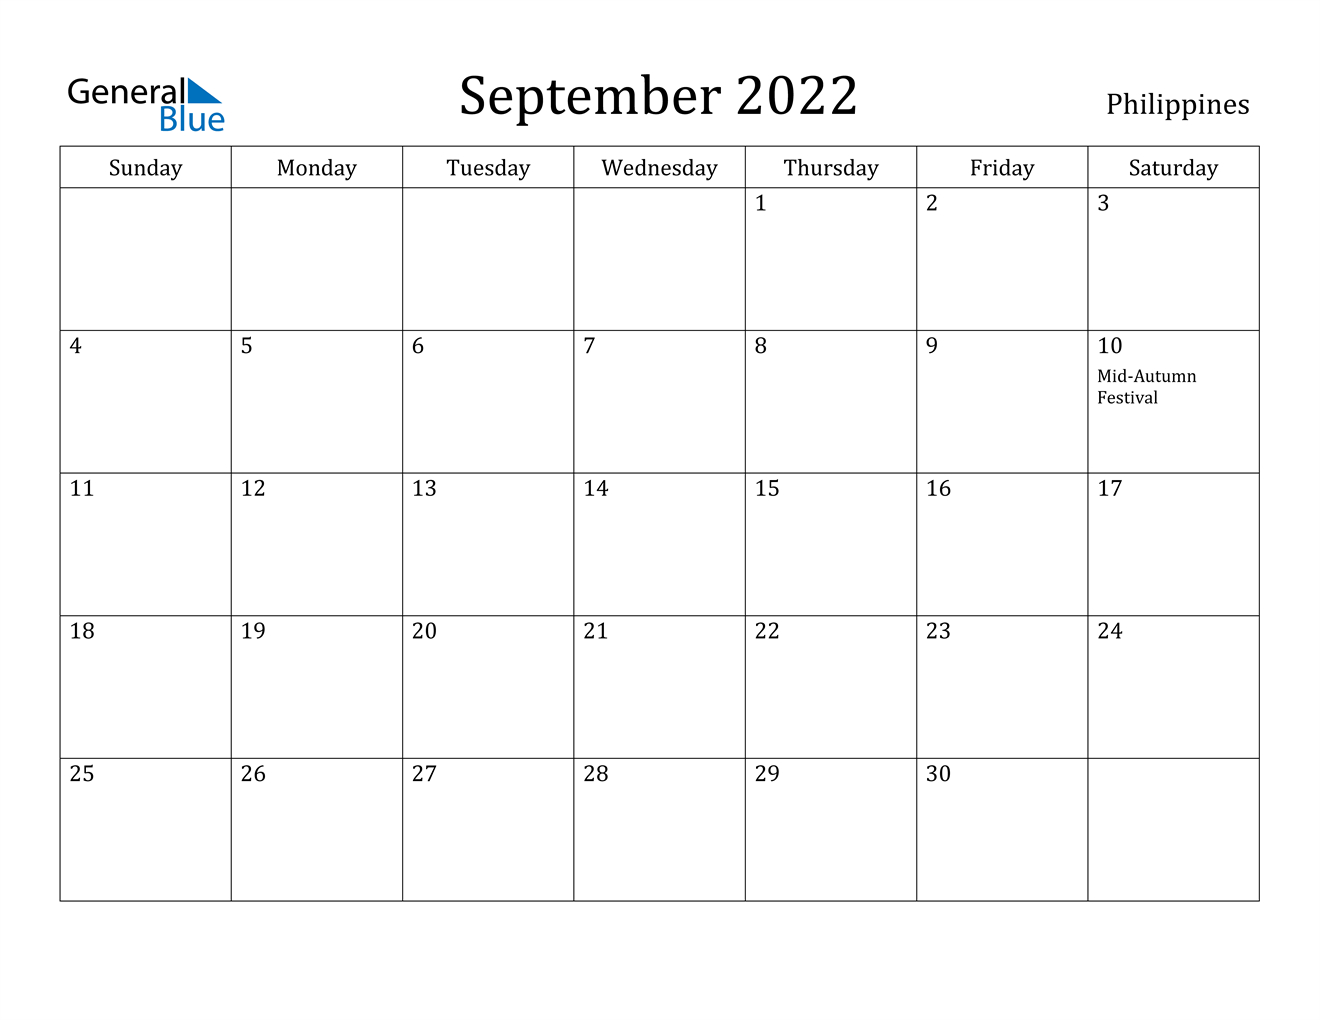 September 2022 Calendar - Philippines